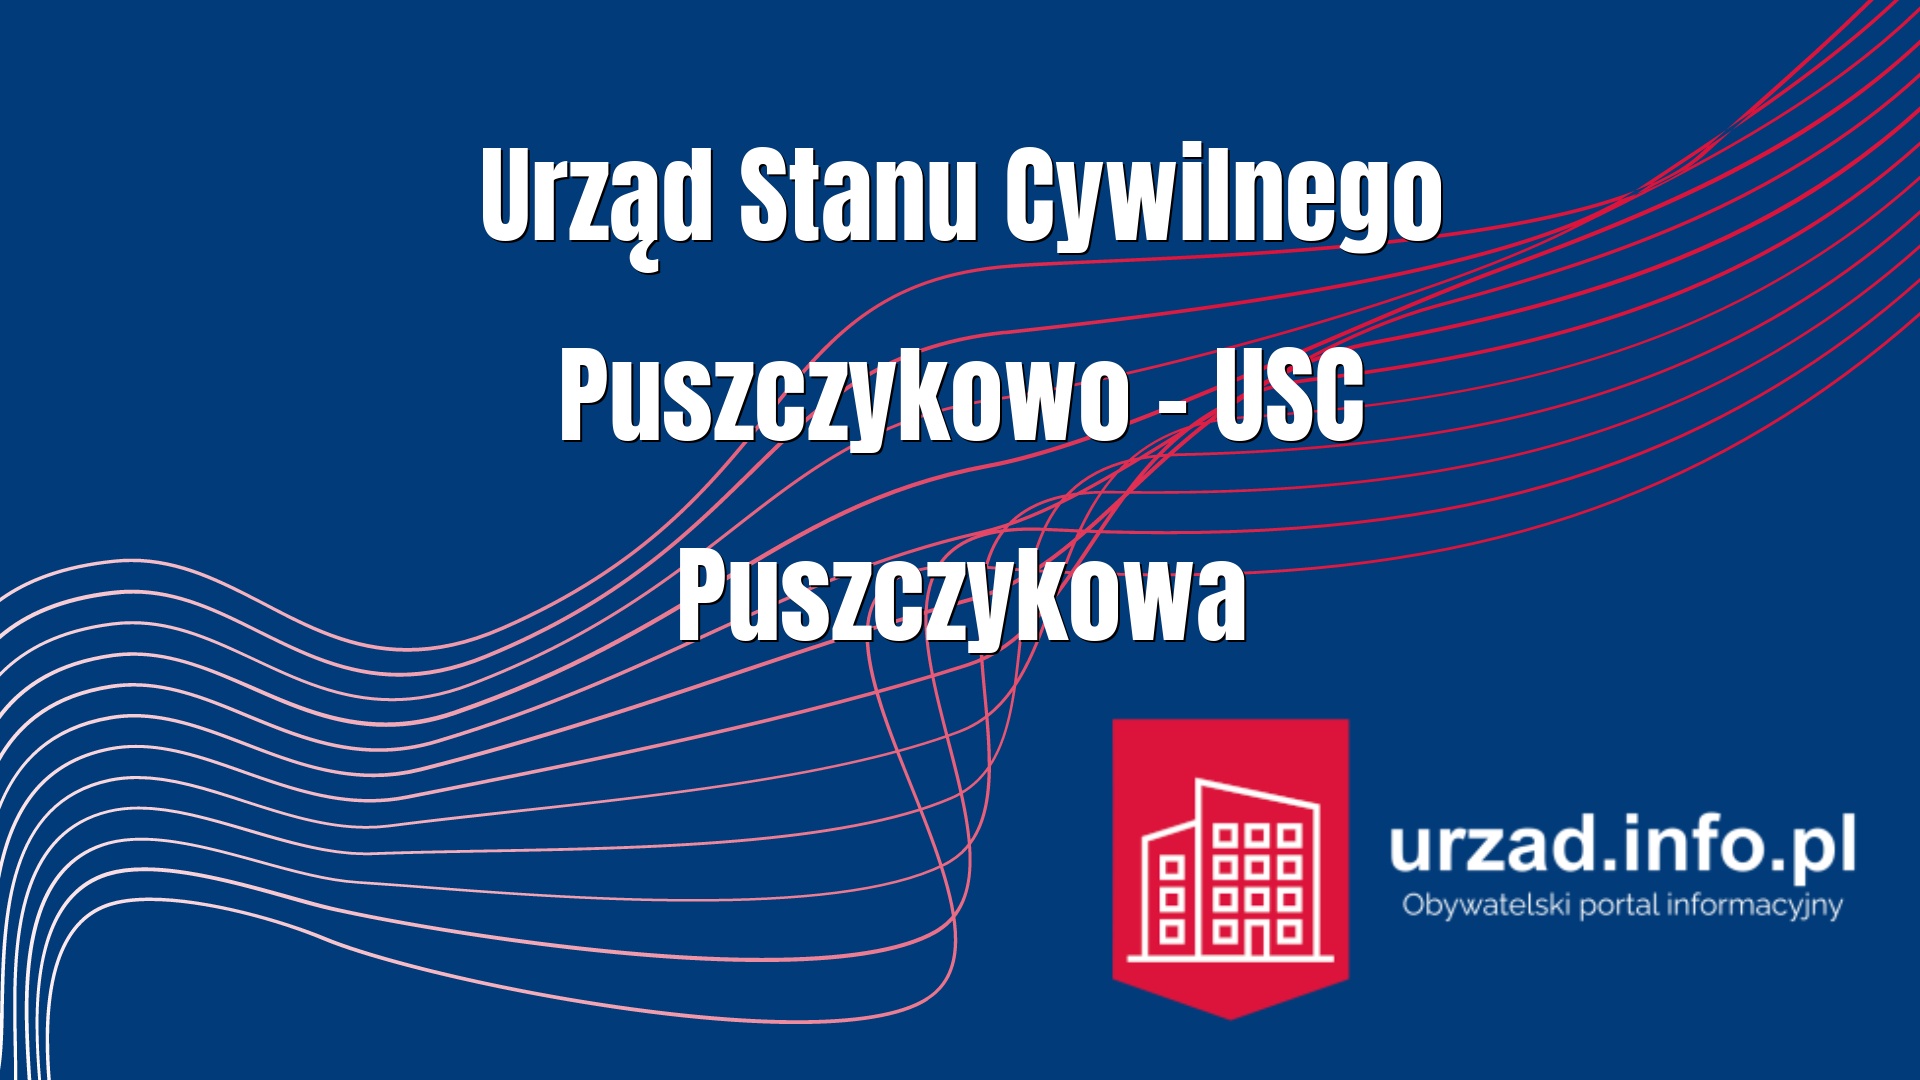 Urząd Stanu Cywilnego Puszczykowo – USC Puszczykowa